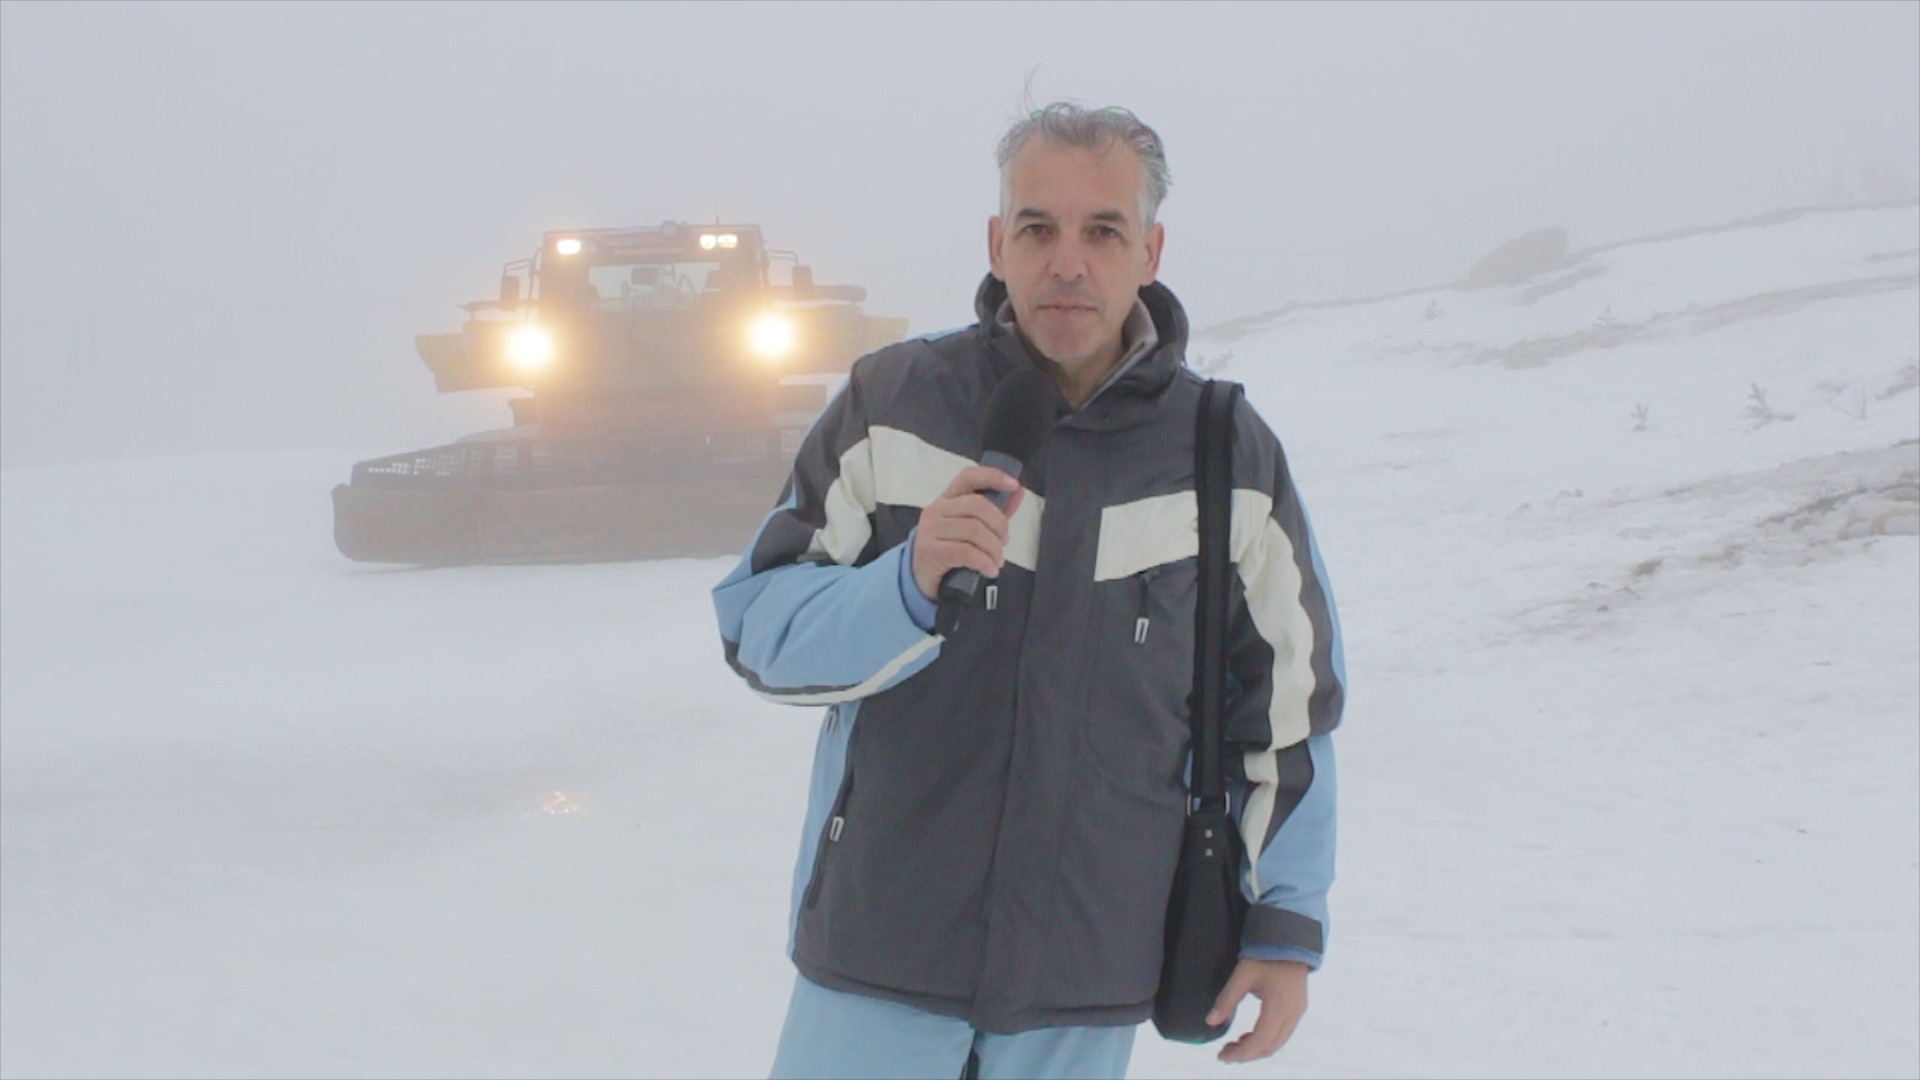 HAK: Zimski uvjeti između Ravče i Karamatića